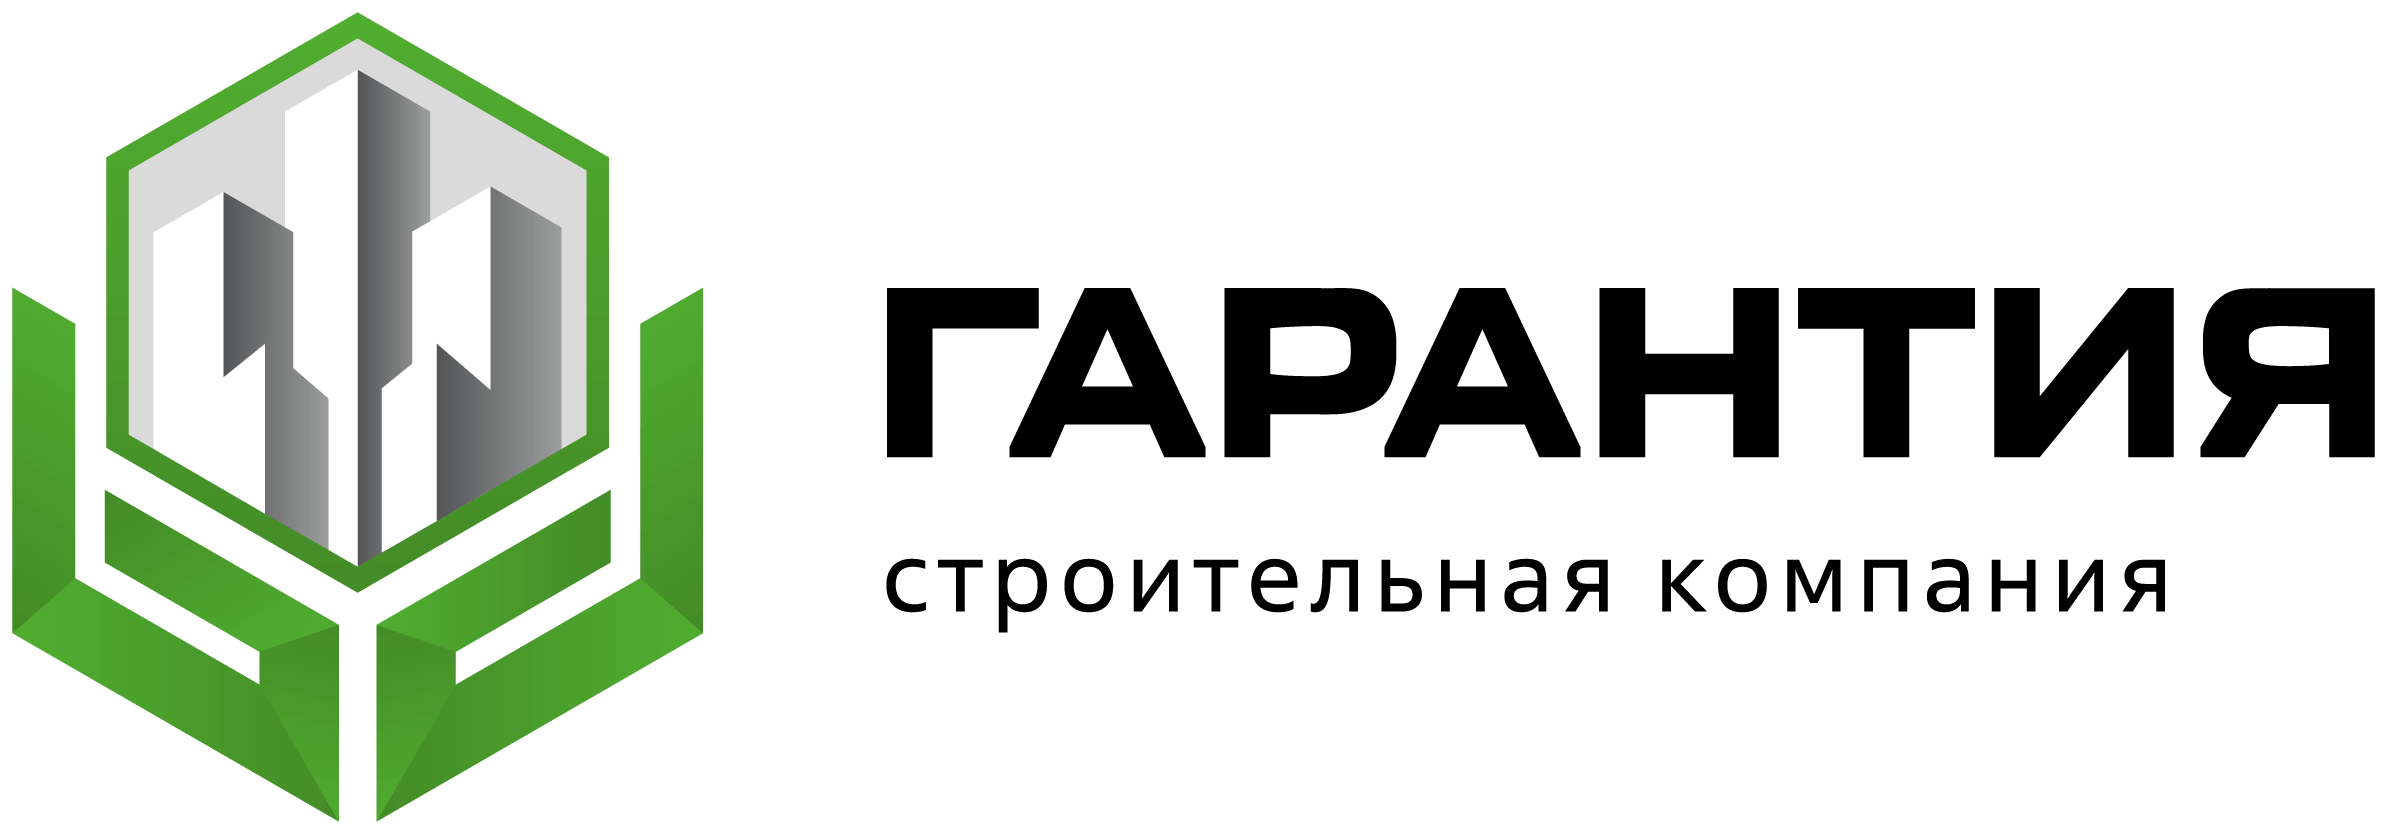 ЖК Гарантия - Город Краснодар new-logo-desc.png